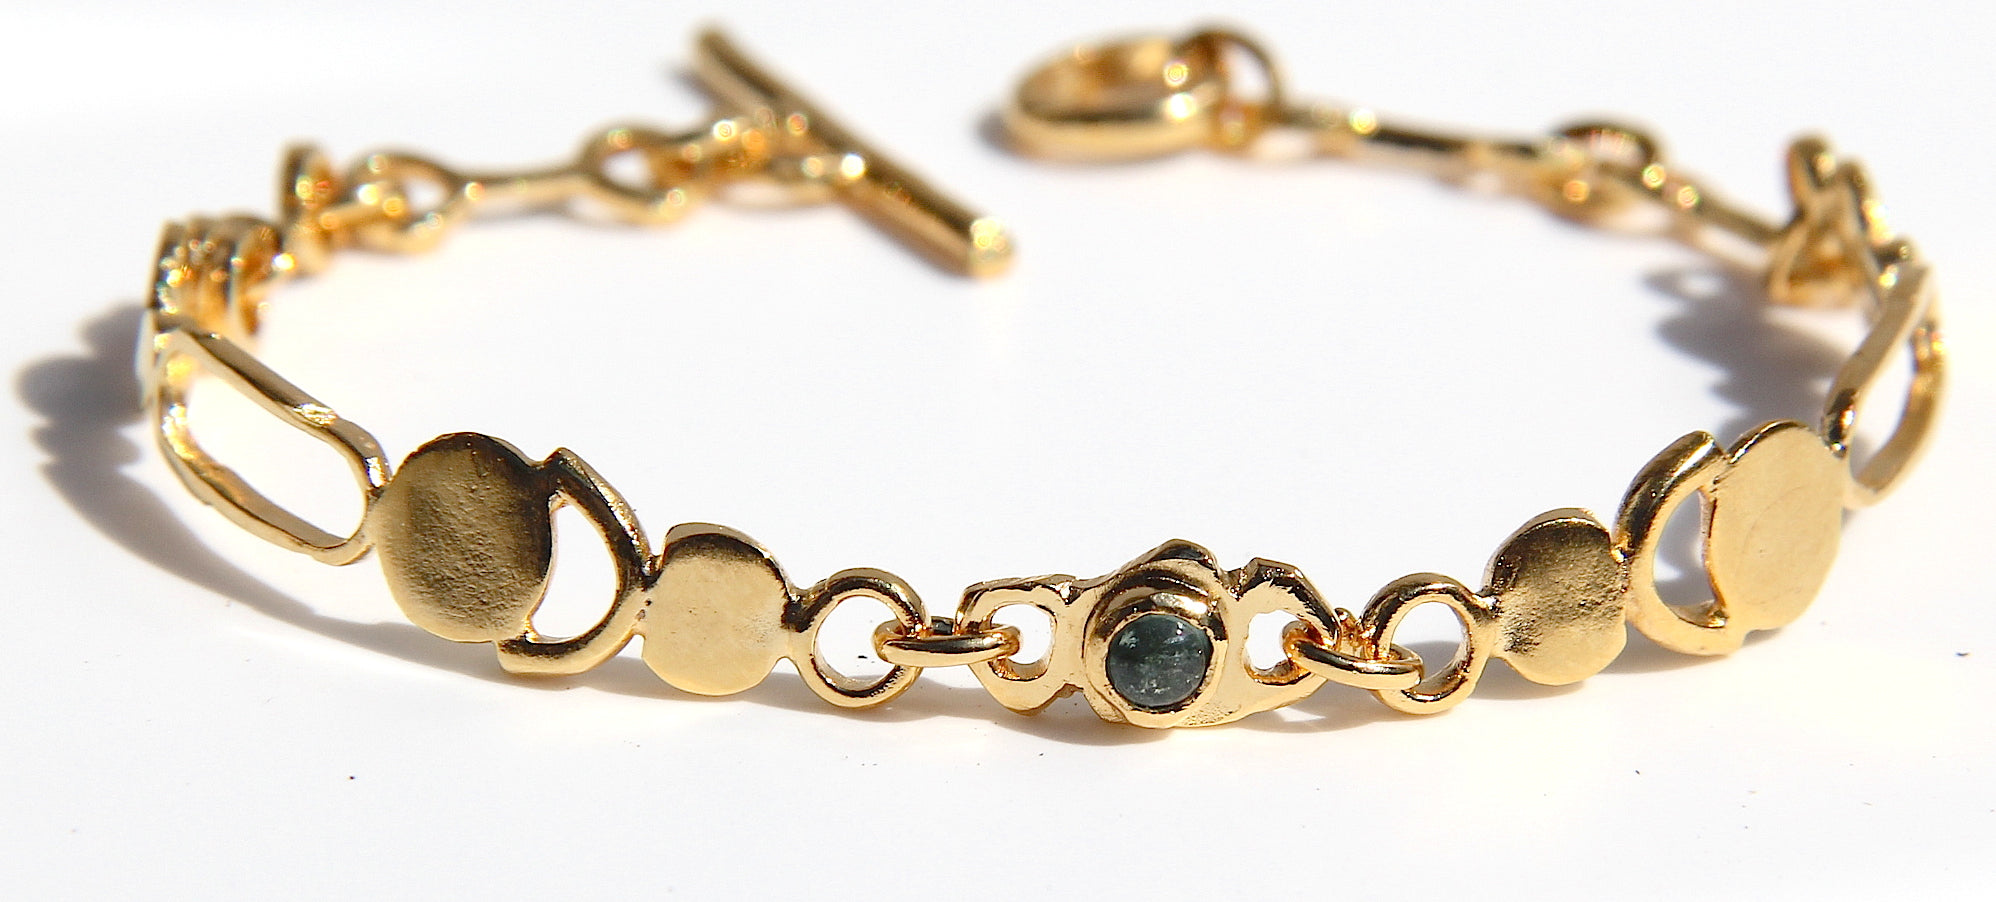 Caledula Bracelet by Lady J Jewelry